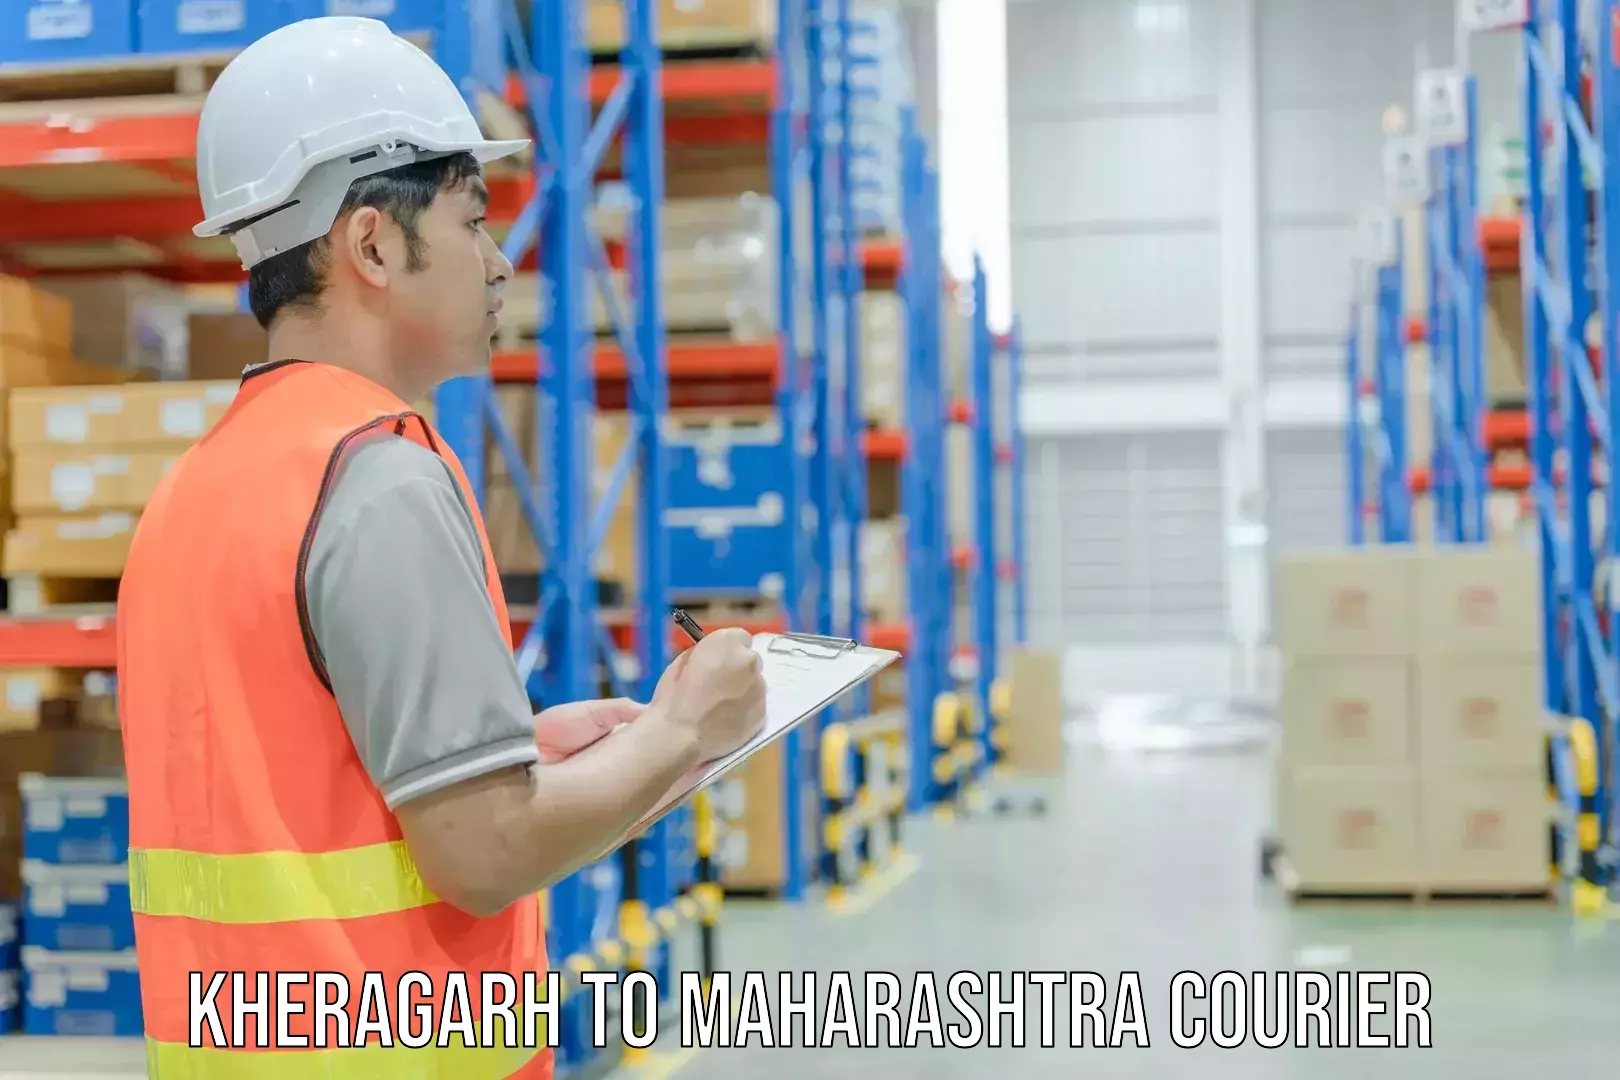 Secure shipping methods Kheragarh to Dadar